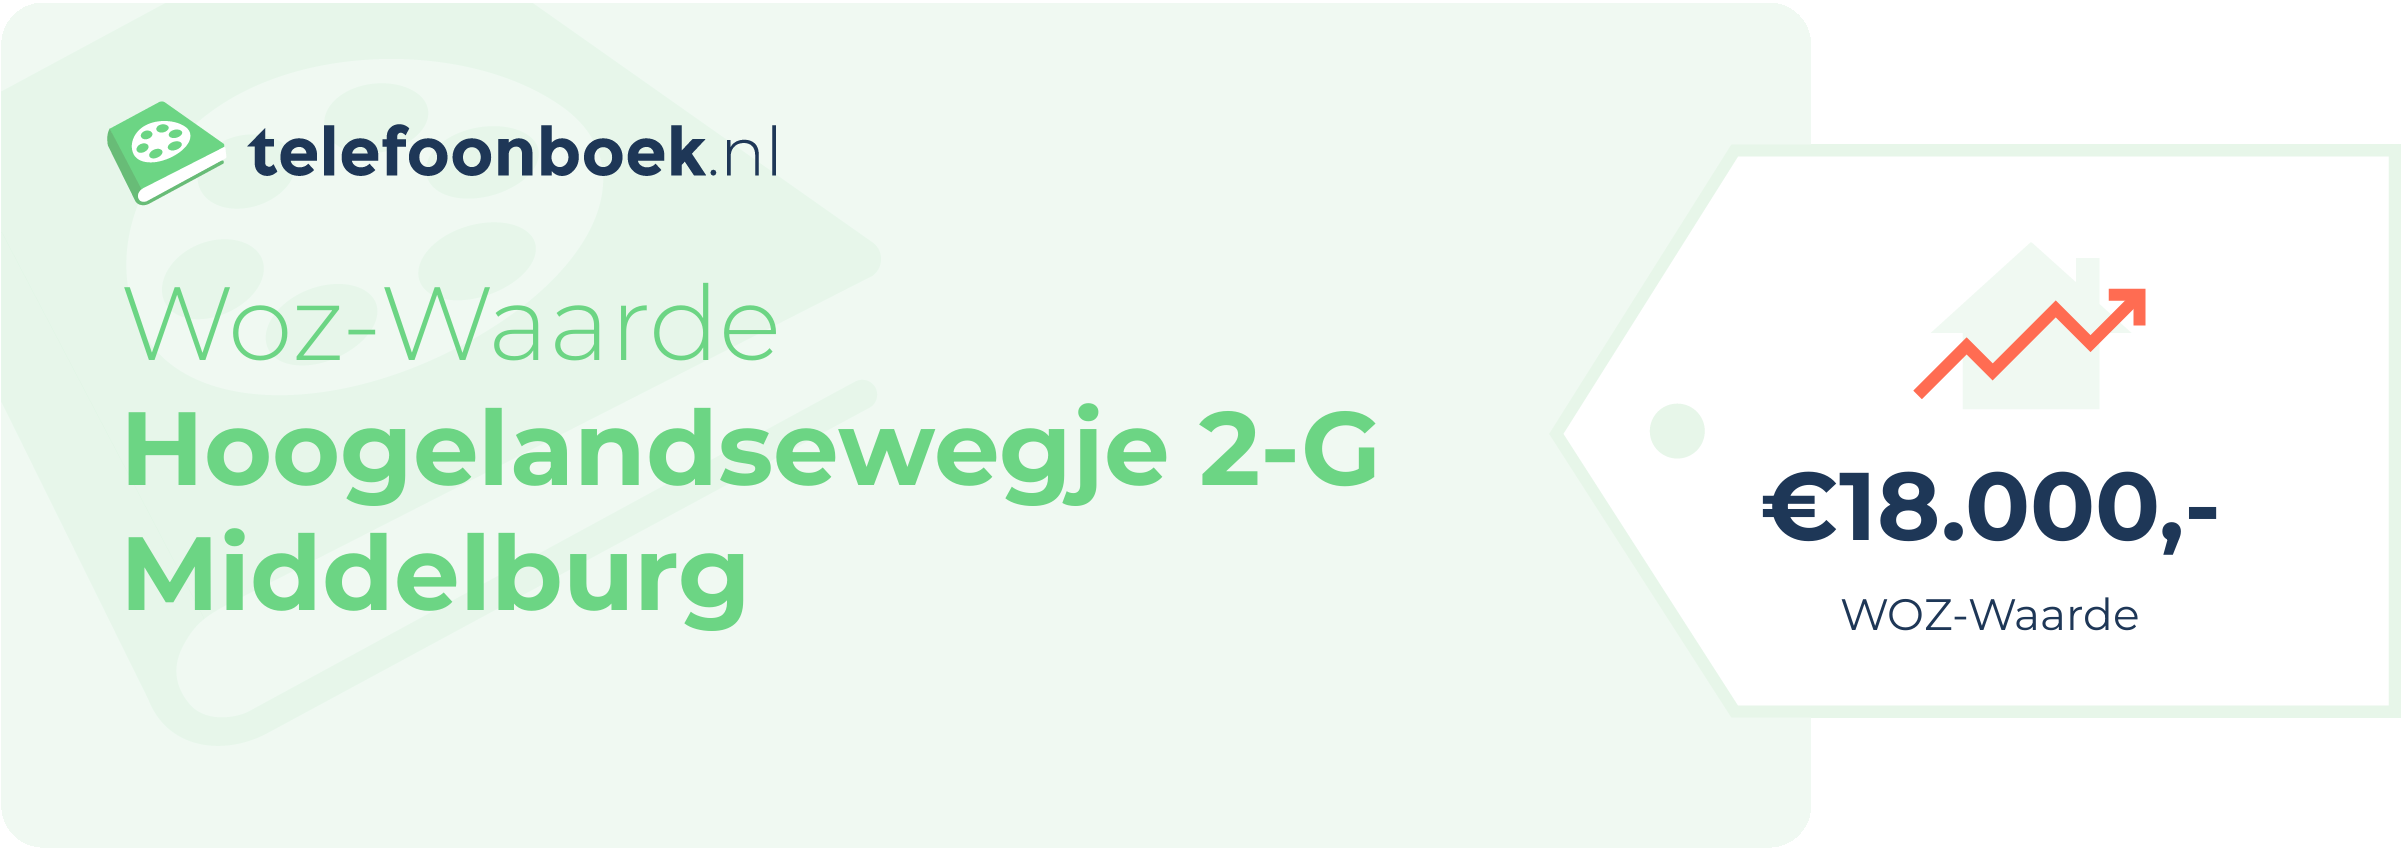 WOZ-waarde Hoogelandsewegje 2-G Middelburg